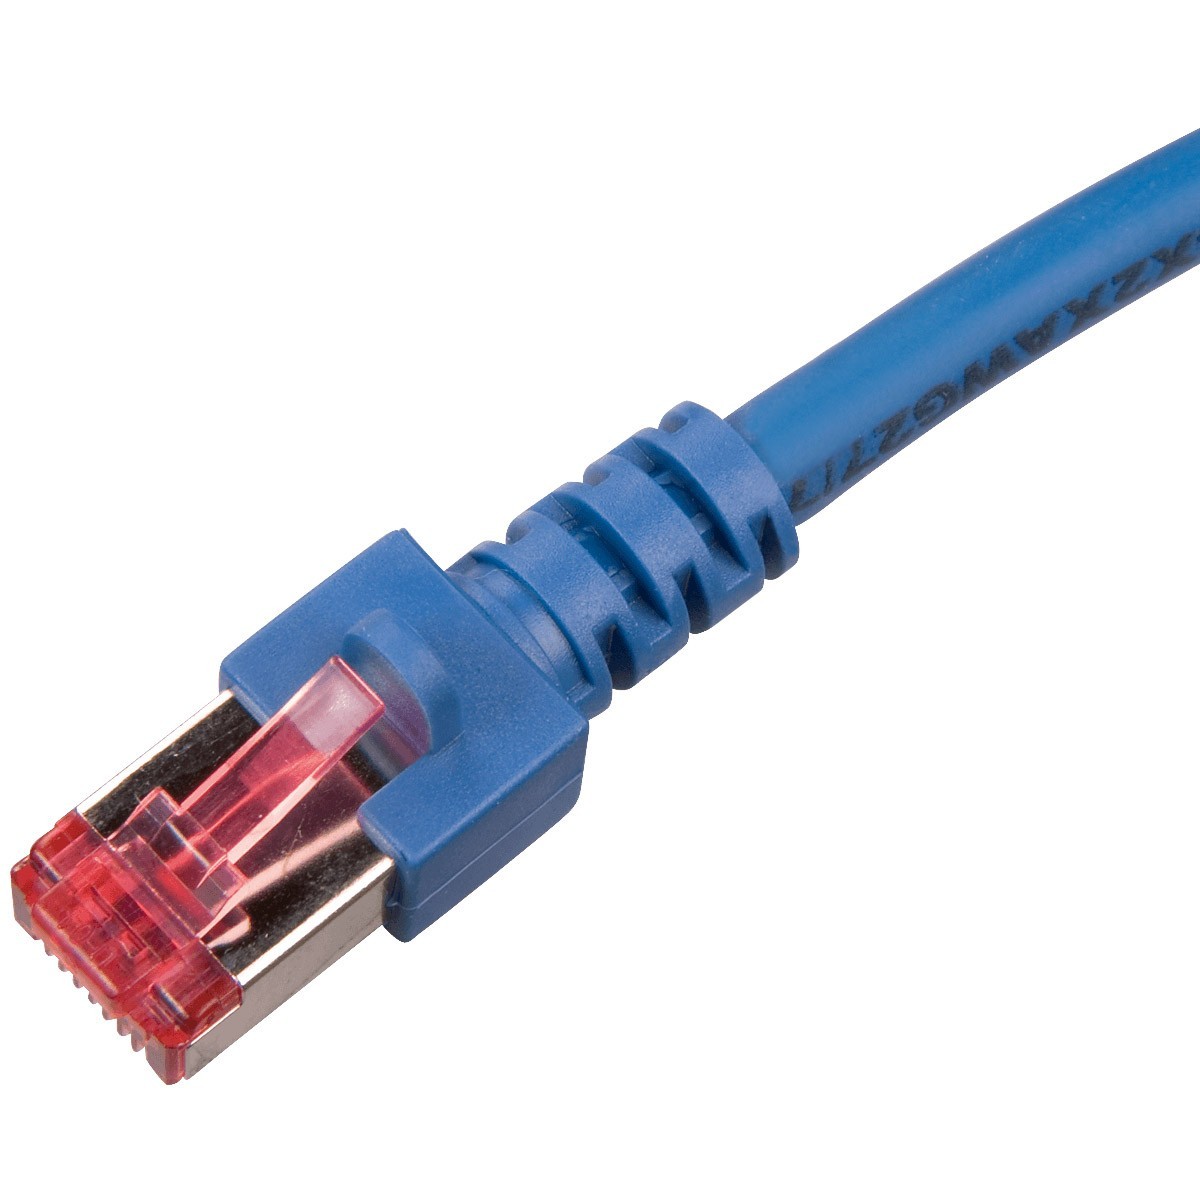 Câble Ethernet 5m, RJ45 Catégorie 6 Transfert 10Gbps - 250MHz, LinQ - Gris  - Français